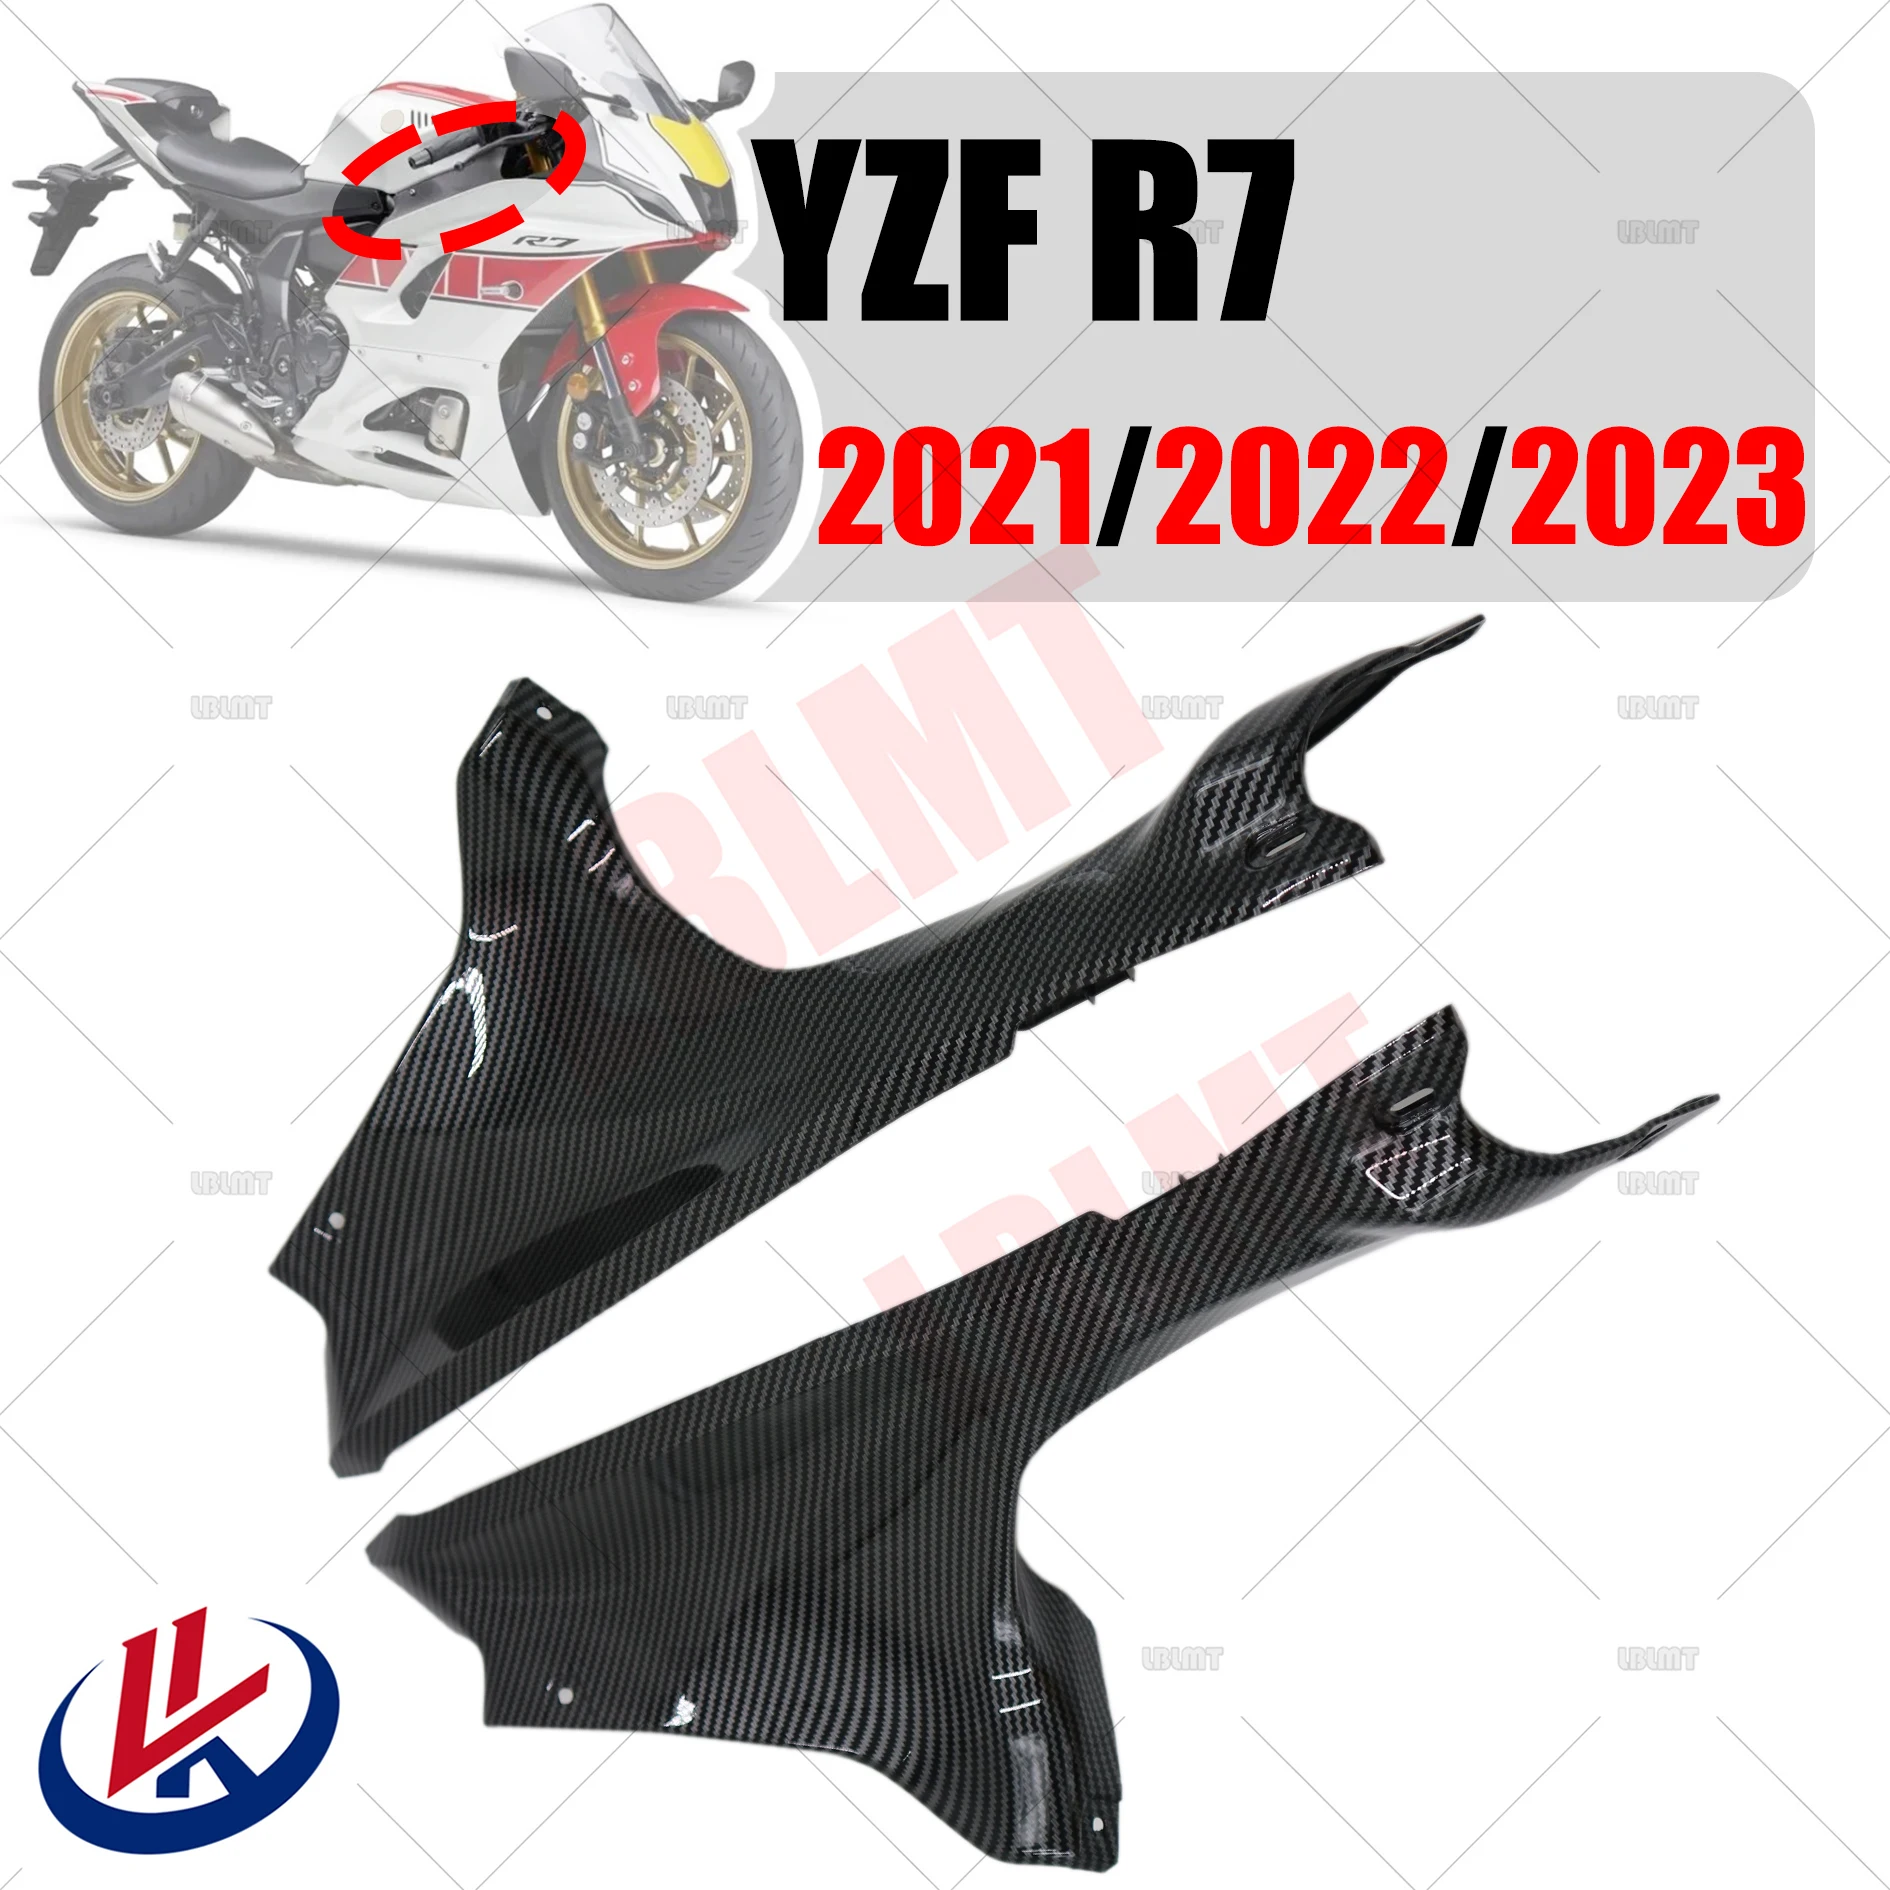 

Обтекатель из углеродного волокна для мотоцикла YAMAHA YZFR7 YZF R7 2021 2022 2023